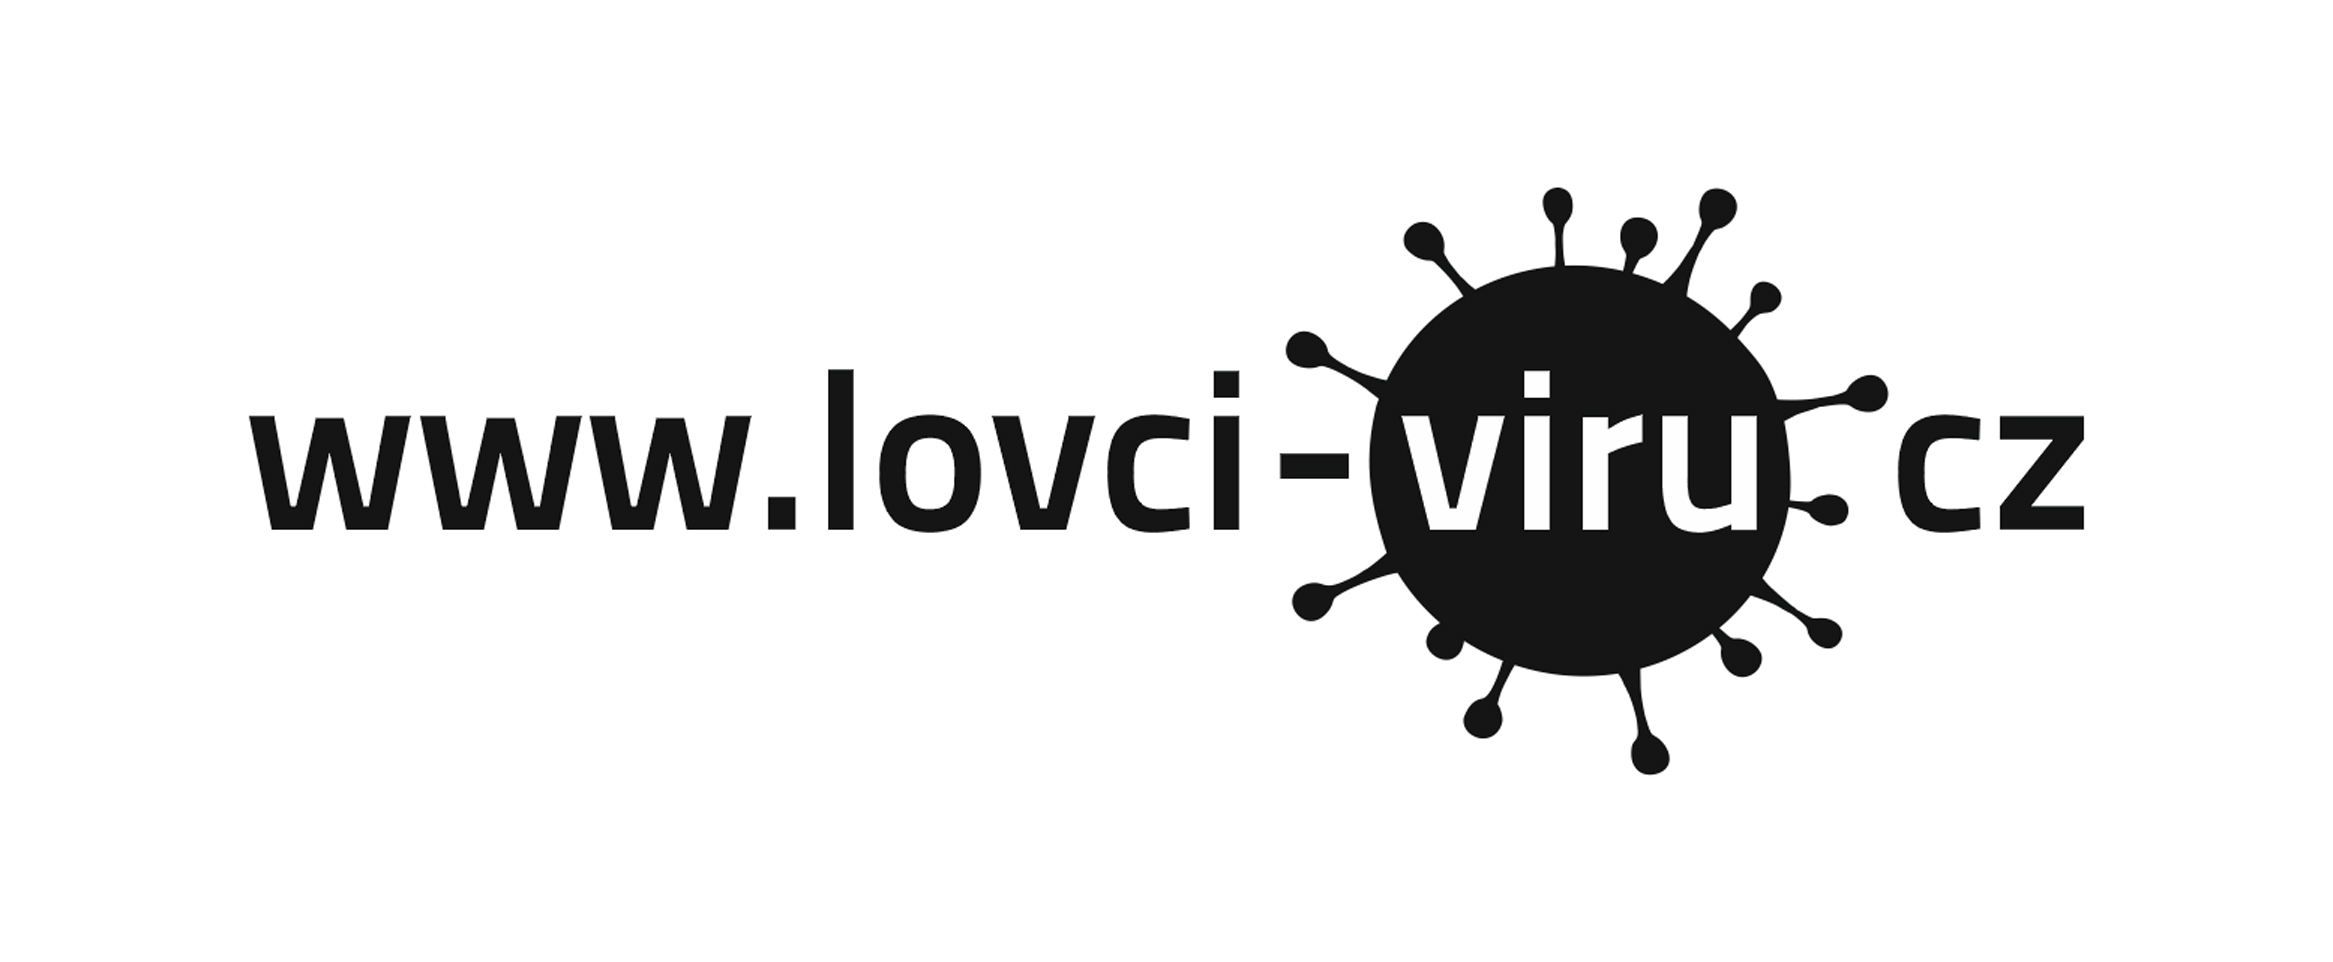 2020-03-01 lovci-viru.cz proti pandemii COVID-19